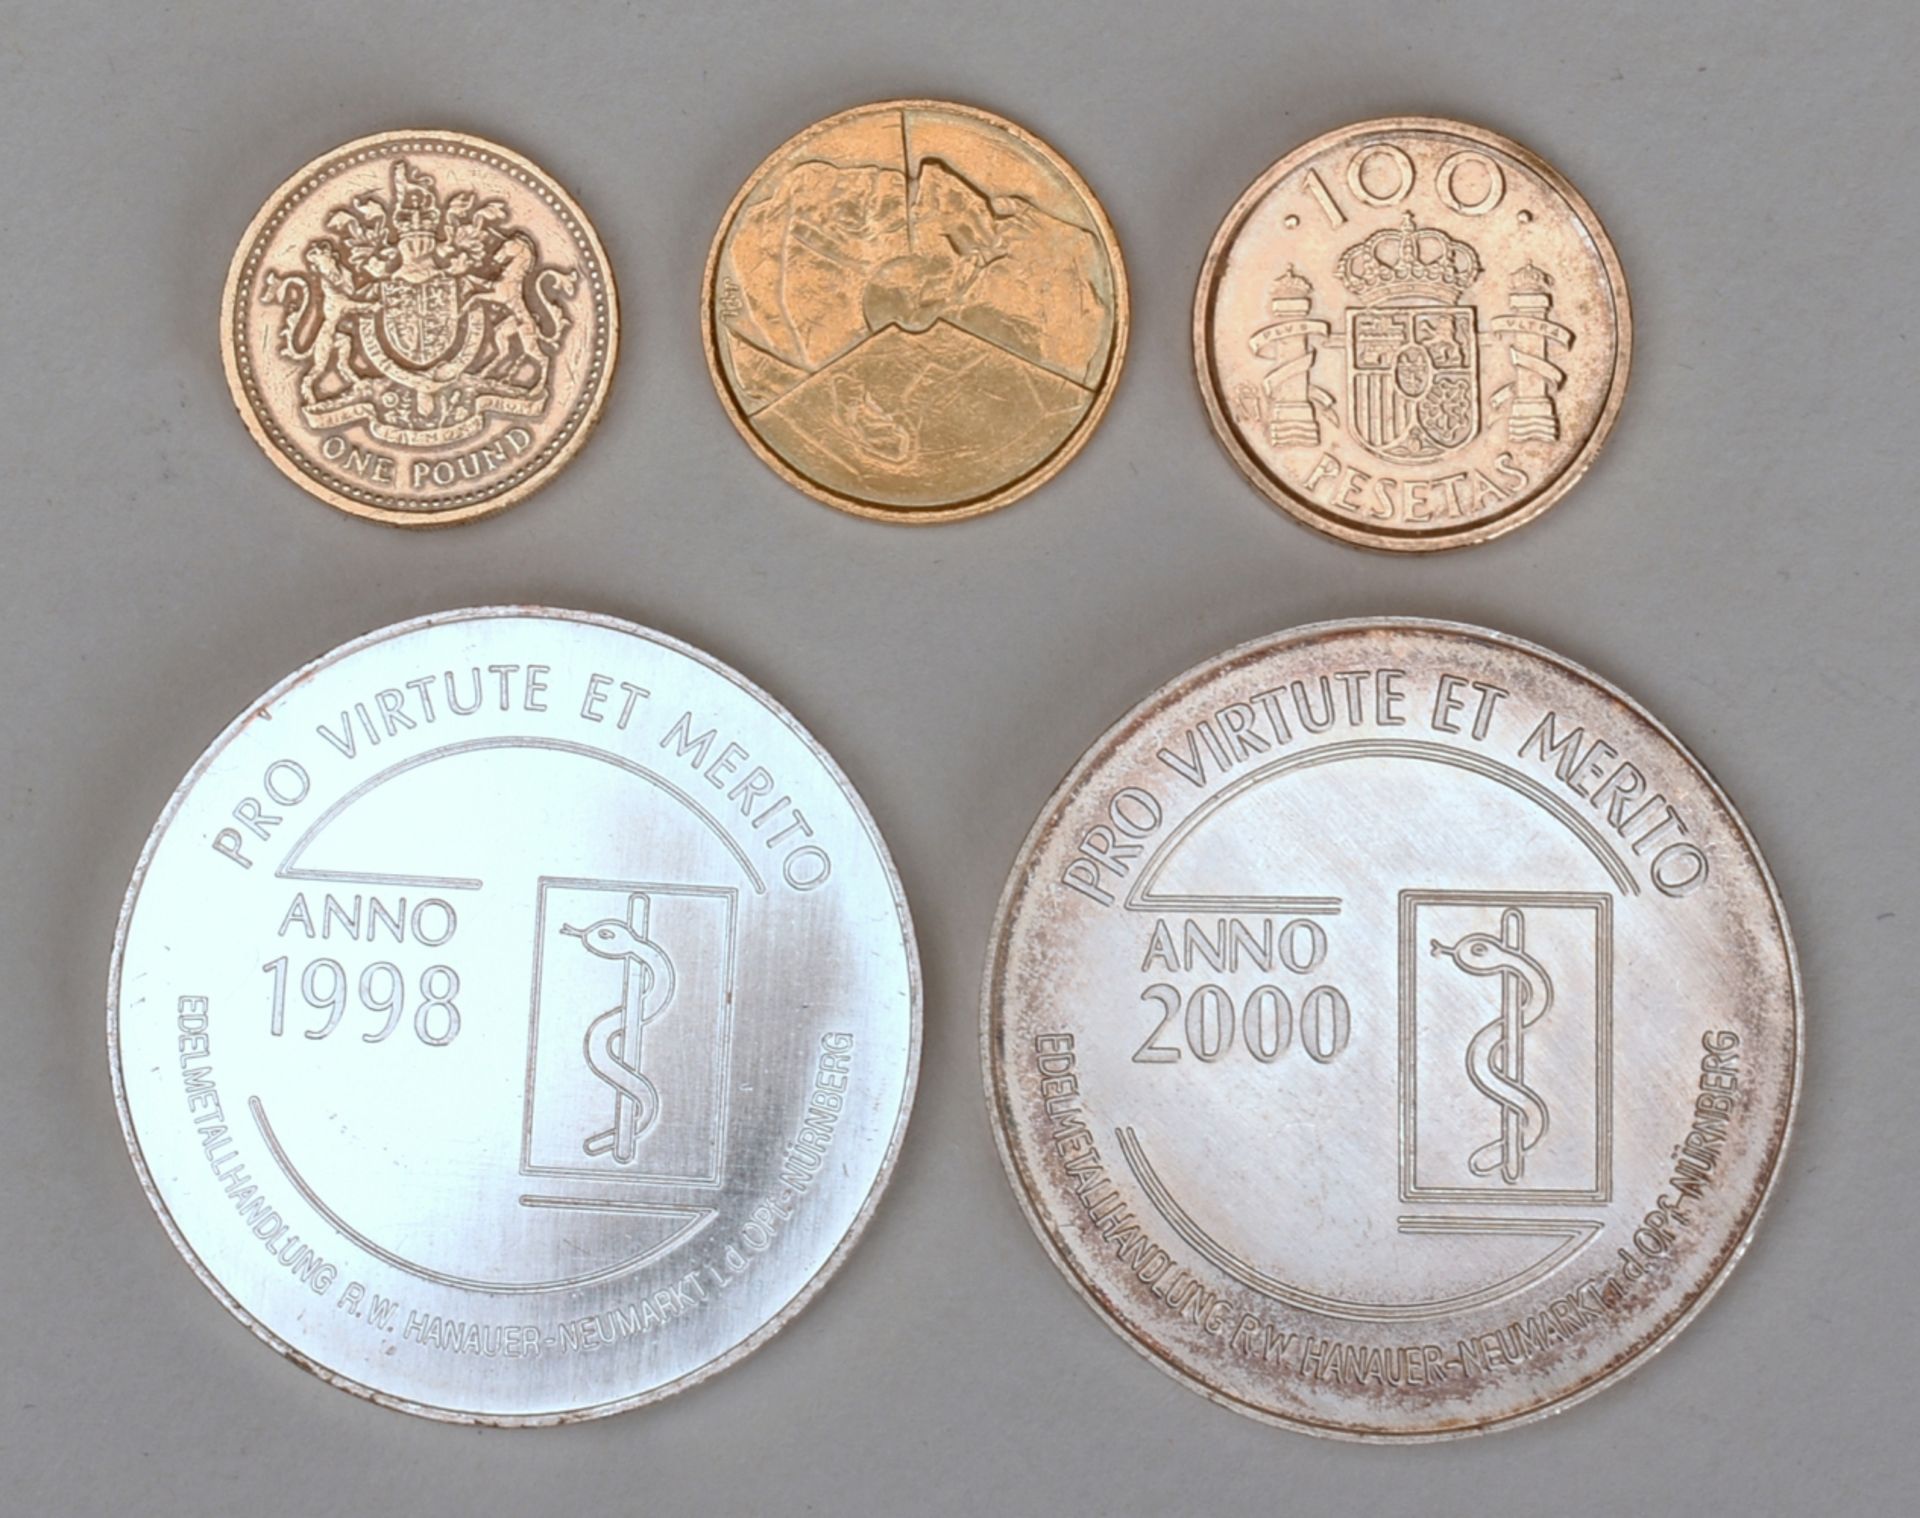 Konvolut Münzen und Medaillen - Image 3 of 3